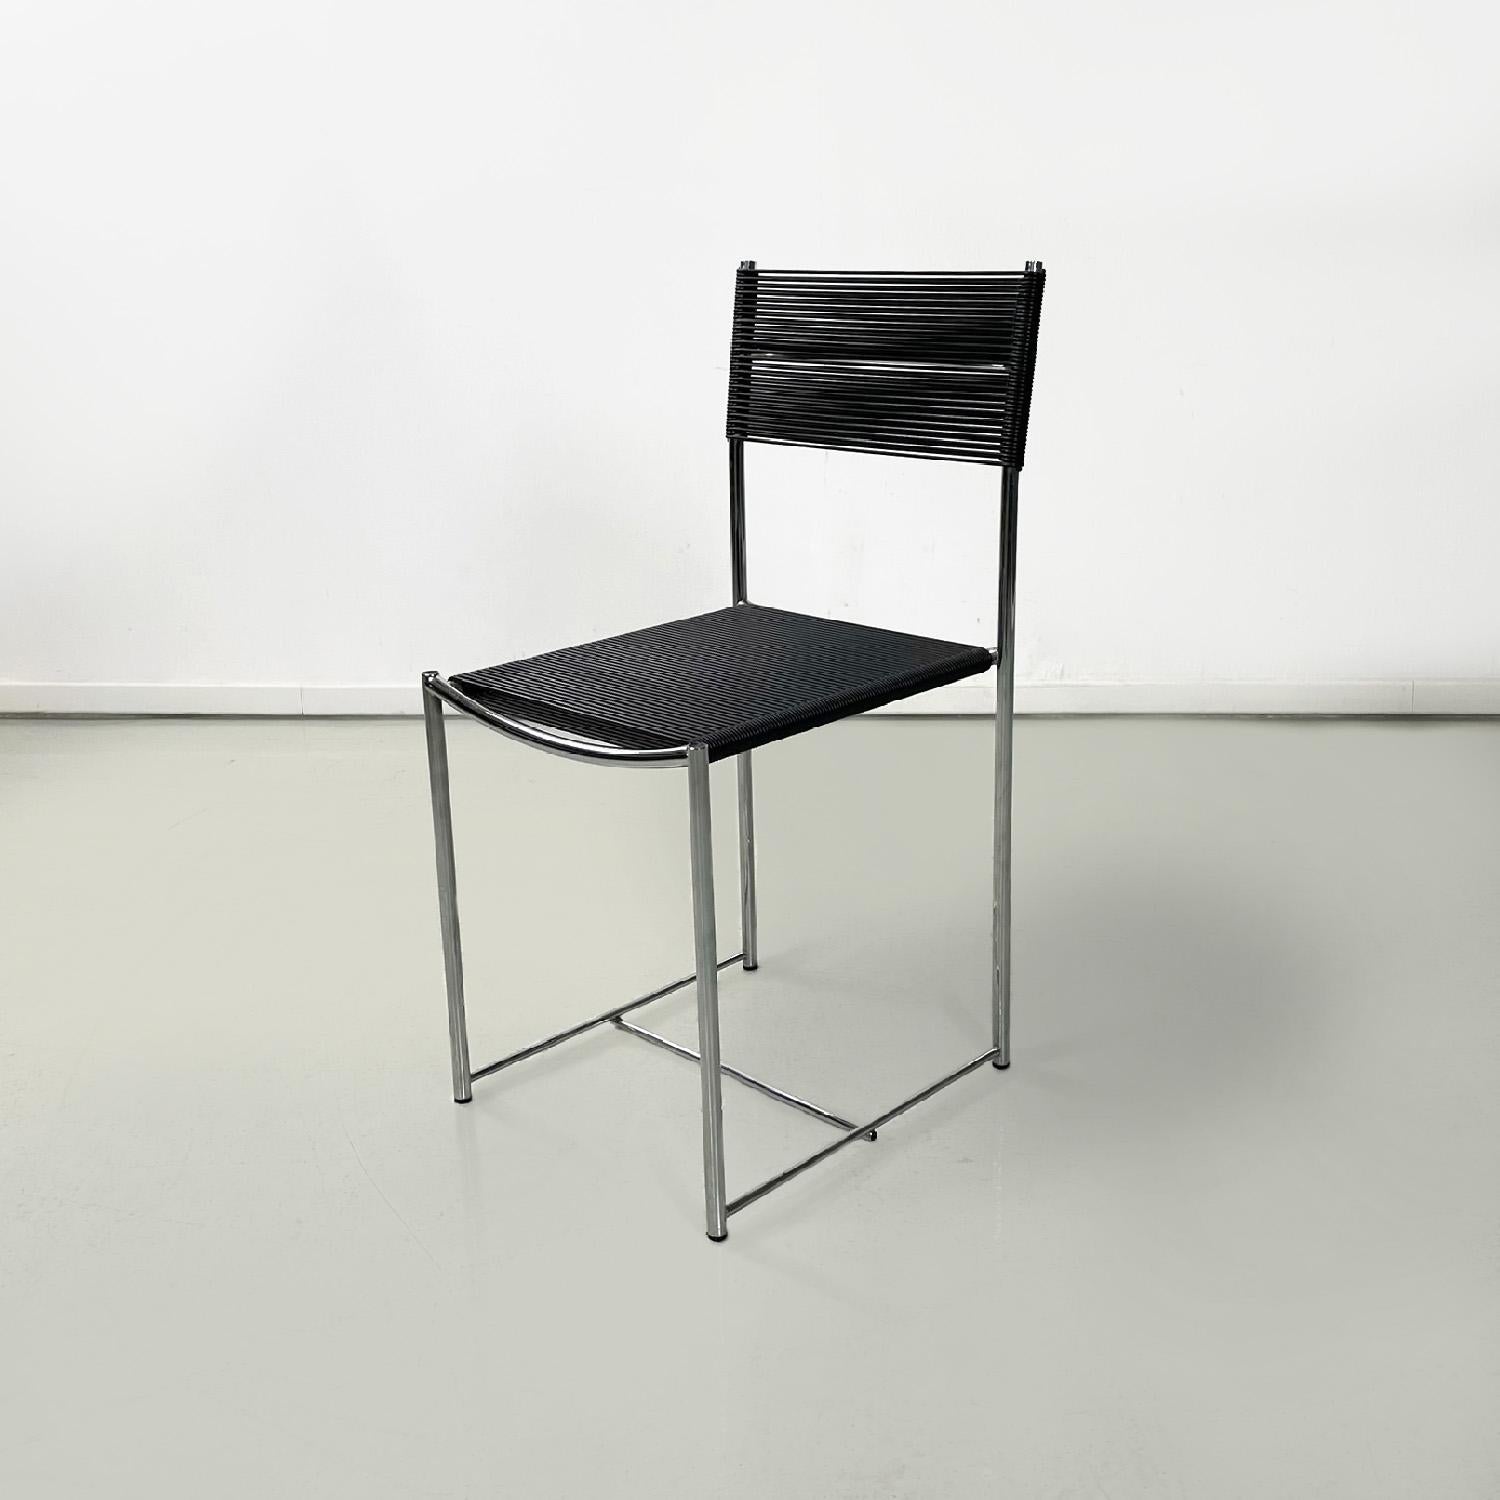 Moderne schwarze Spaghetti-Stühle von Giandomenico Belotti für Alias, 1980er Jahre
Paar Stühle mod. Spaghetti in Metallstange mit elastischen Sitz und Rücken aus schwarzen scooby Fäden. Gebogener Griff hinter der Rückenlehne.
Produziert von Alias in